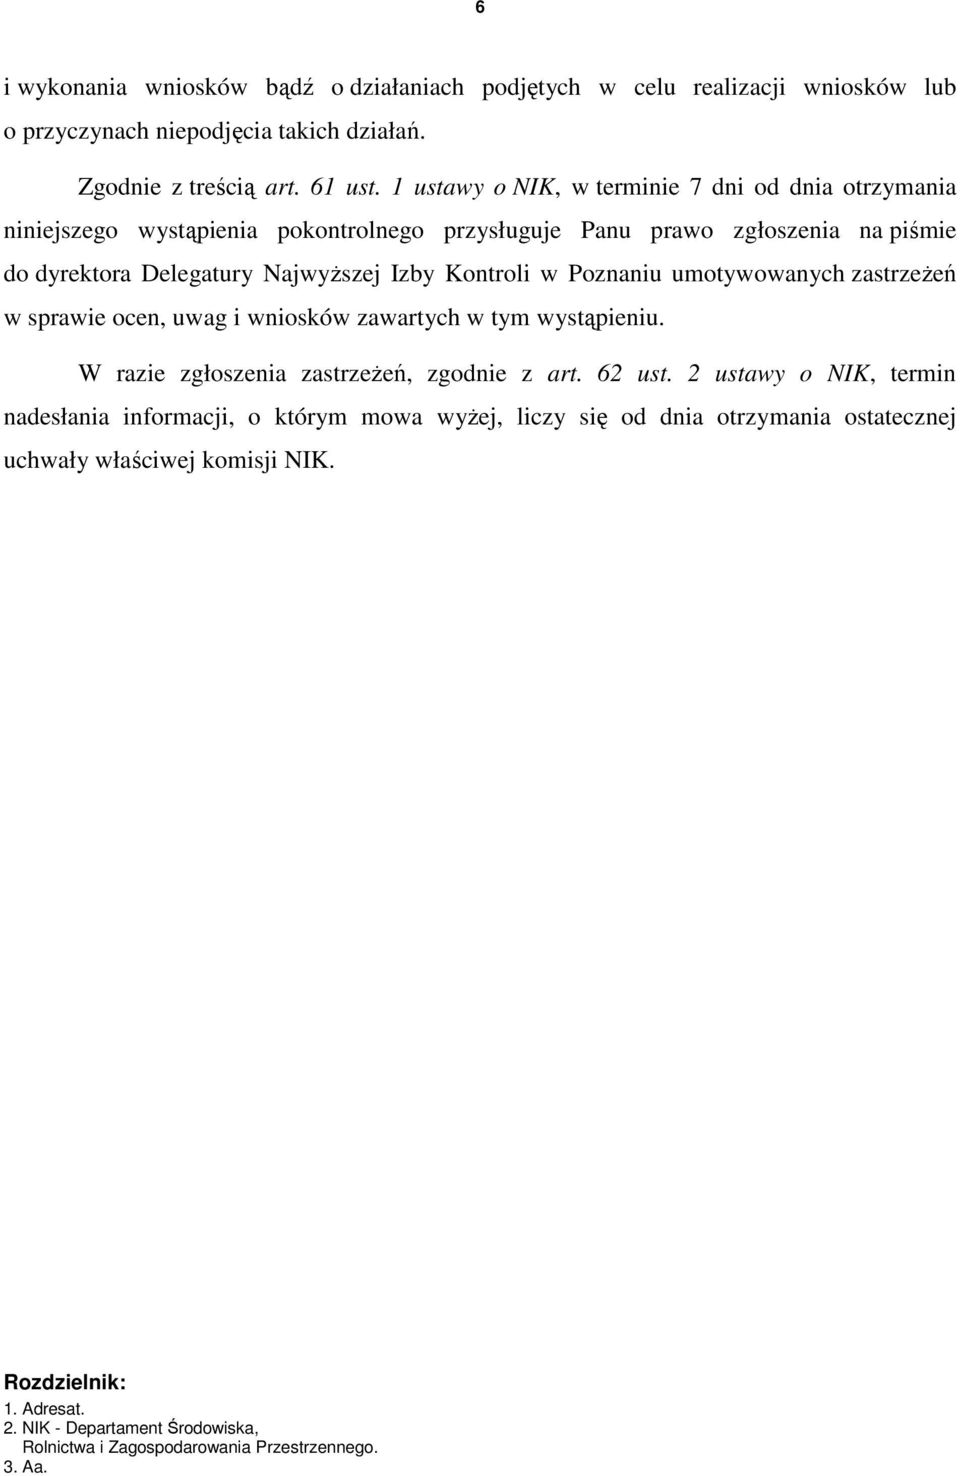 Poznaniu umotywowanych zastrzeŝeń w sprawie ocen, uwag i wniosków zawartych w tym wystąpieniu. W razie zgłoszenia zastrzeŝeń, zgodnie z art. 62 ust.